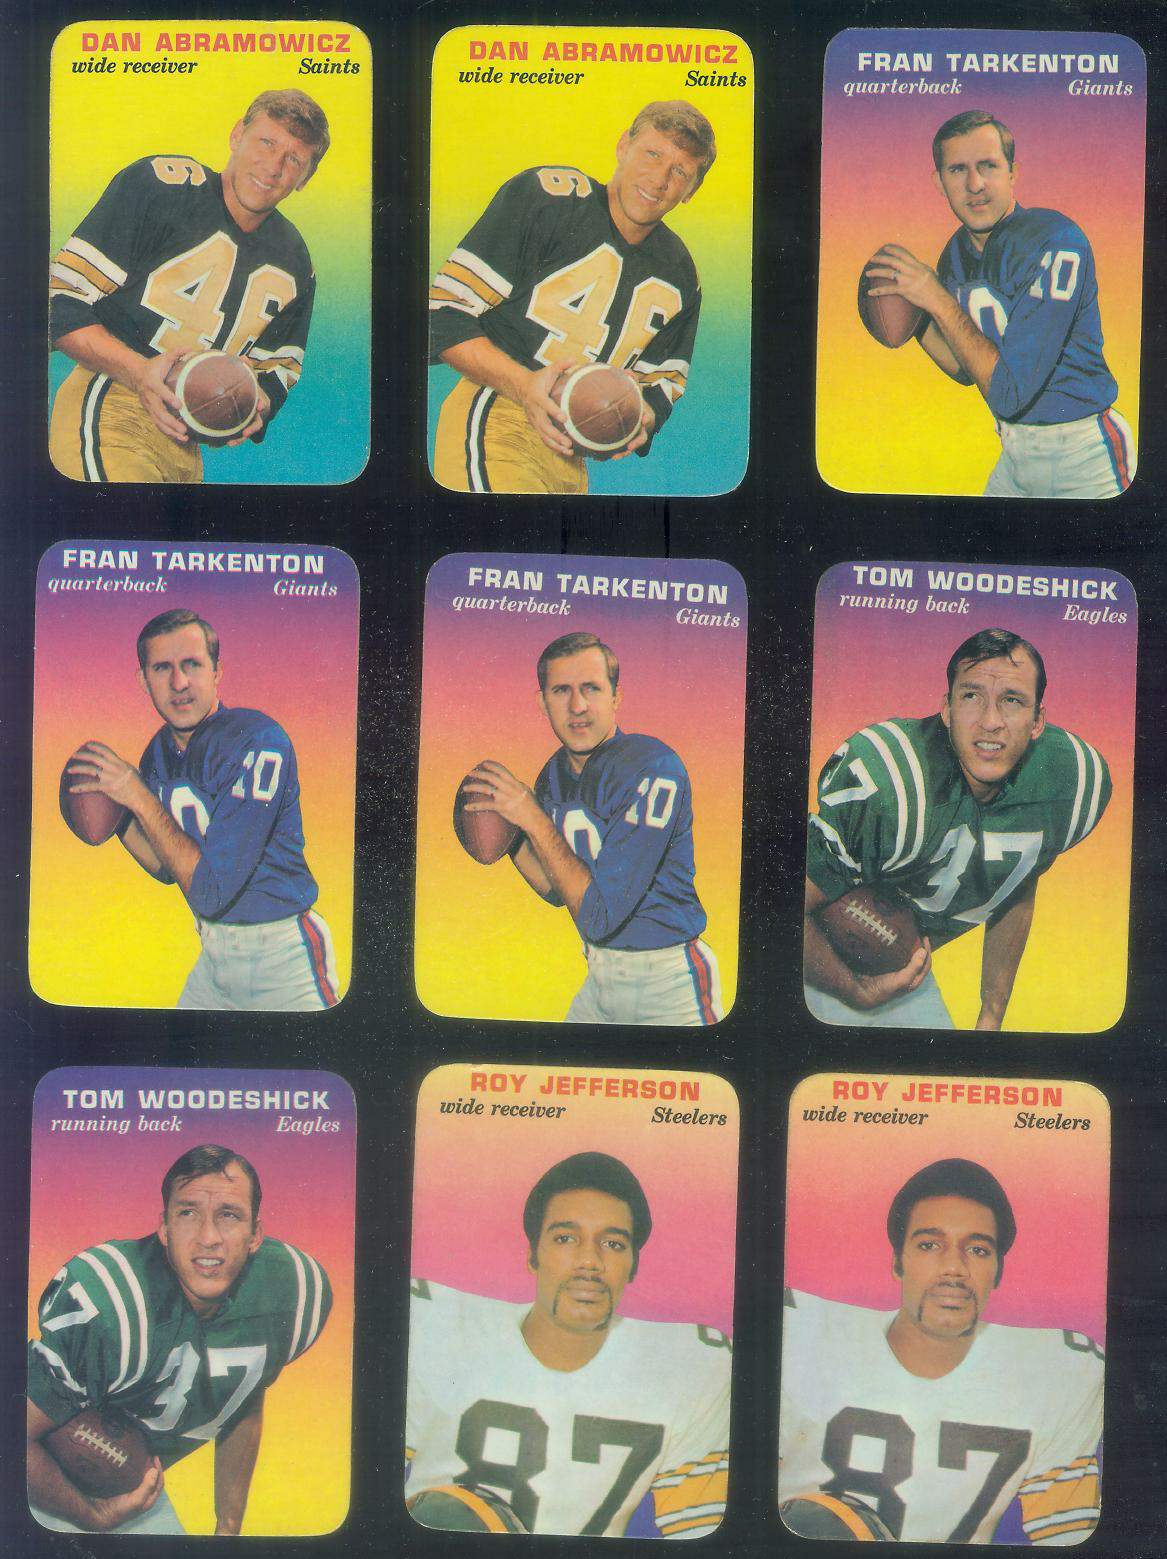 1970 Topps Glossy #15 Fran Tarkenton - FB Insert (Vikings) Football cards value